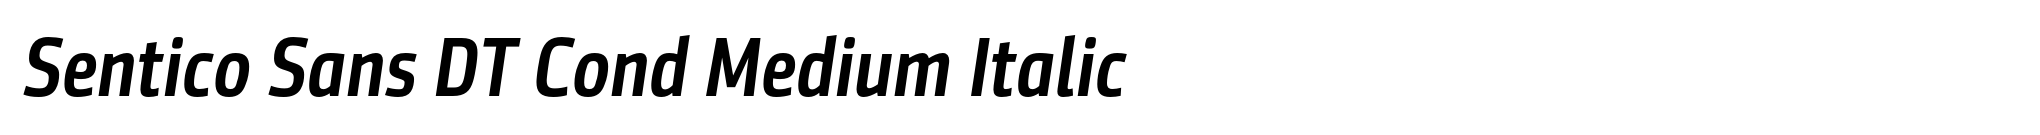 Sentico Sans DT Cond Medium Italic image